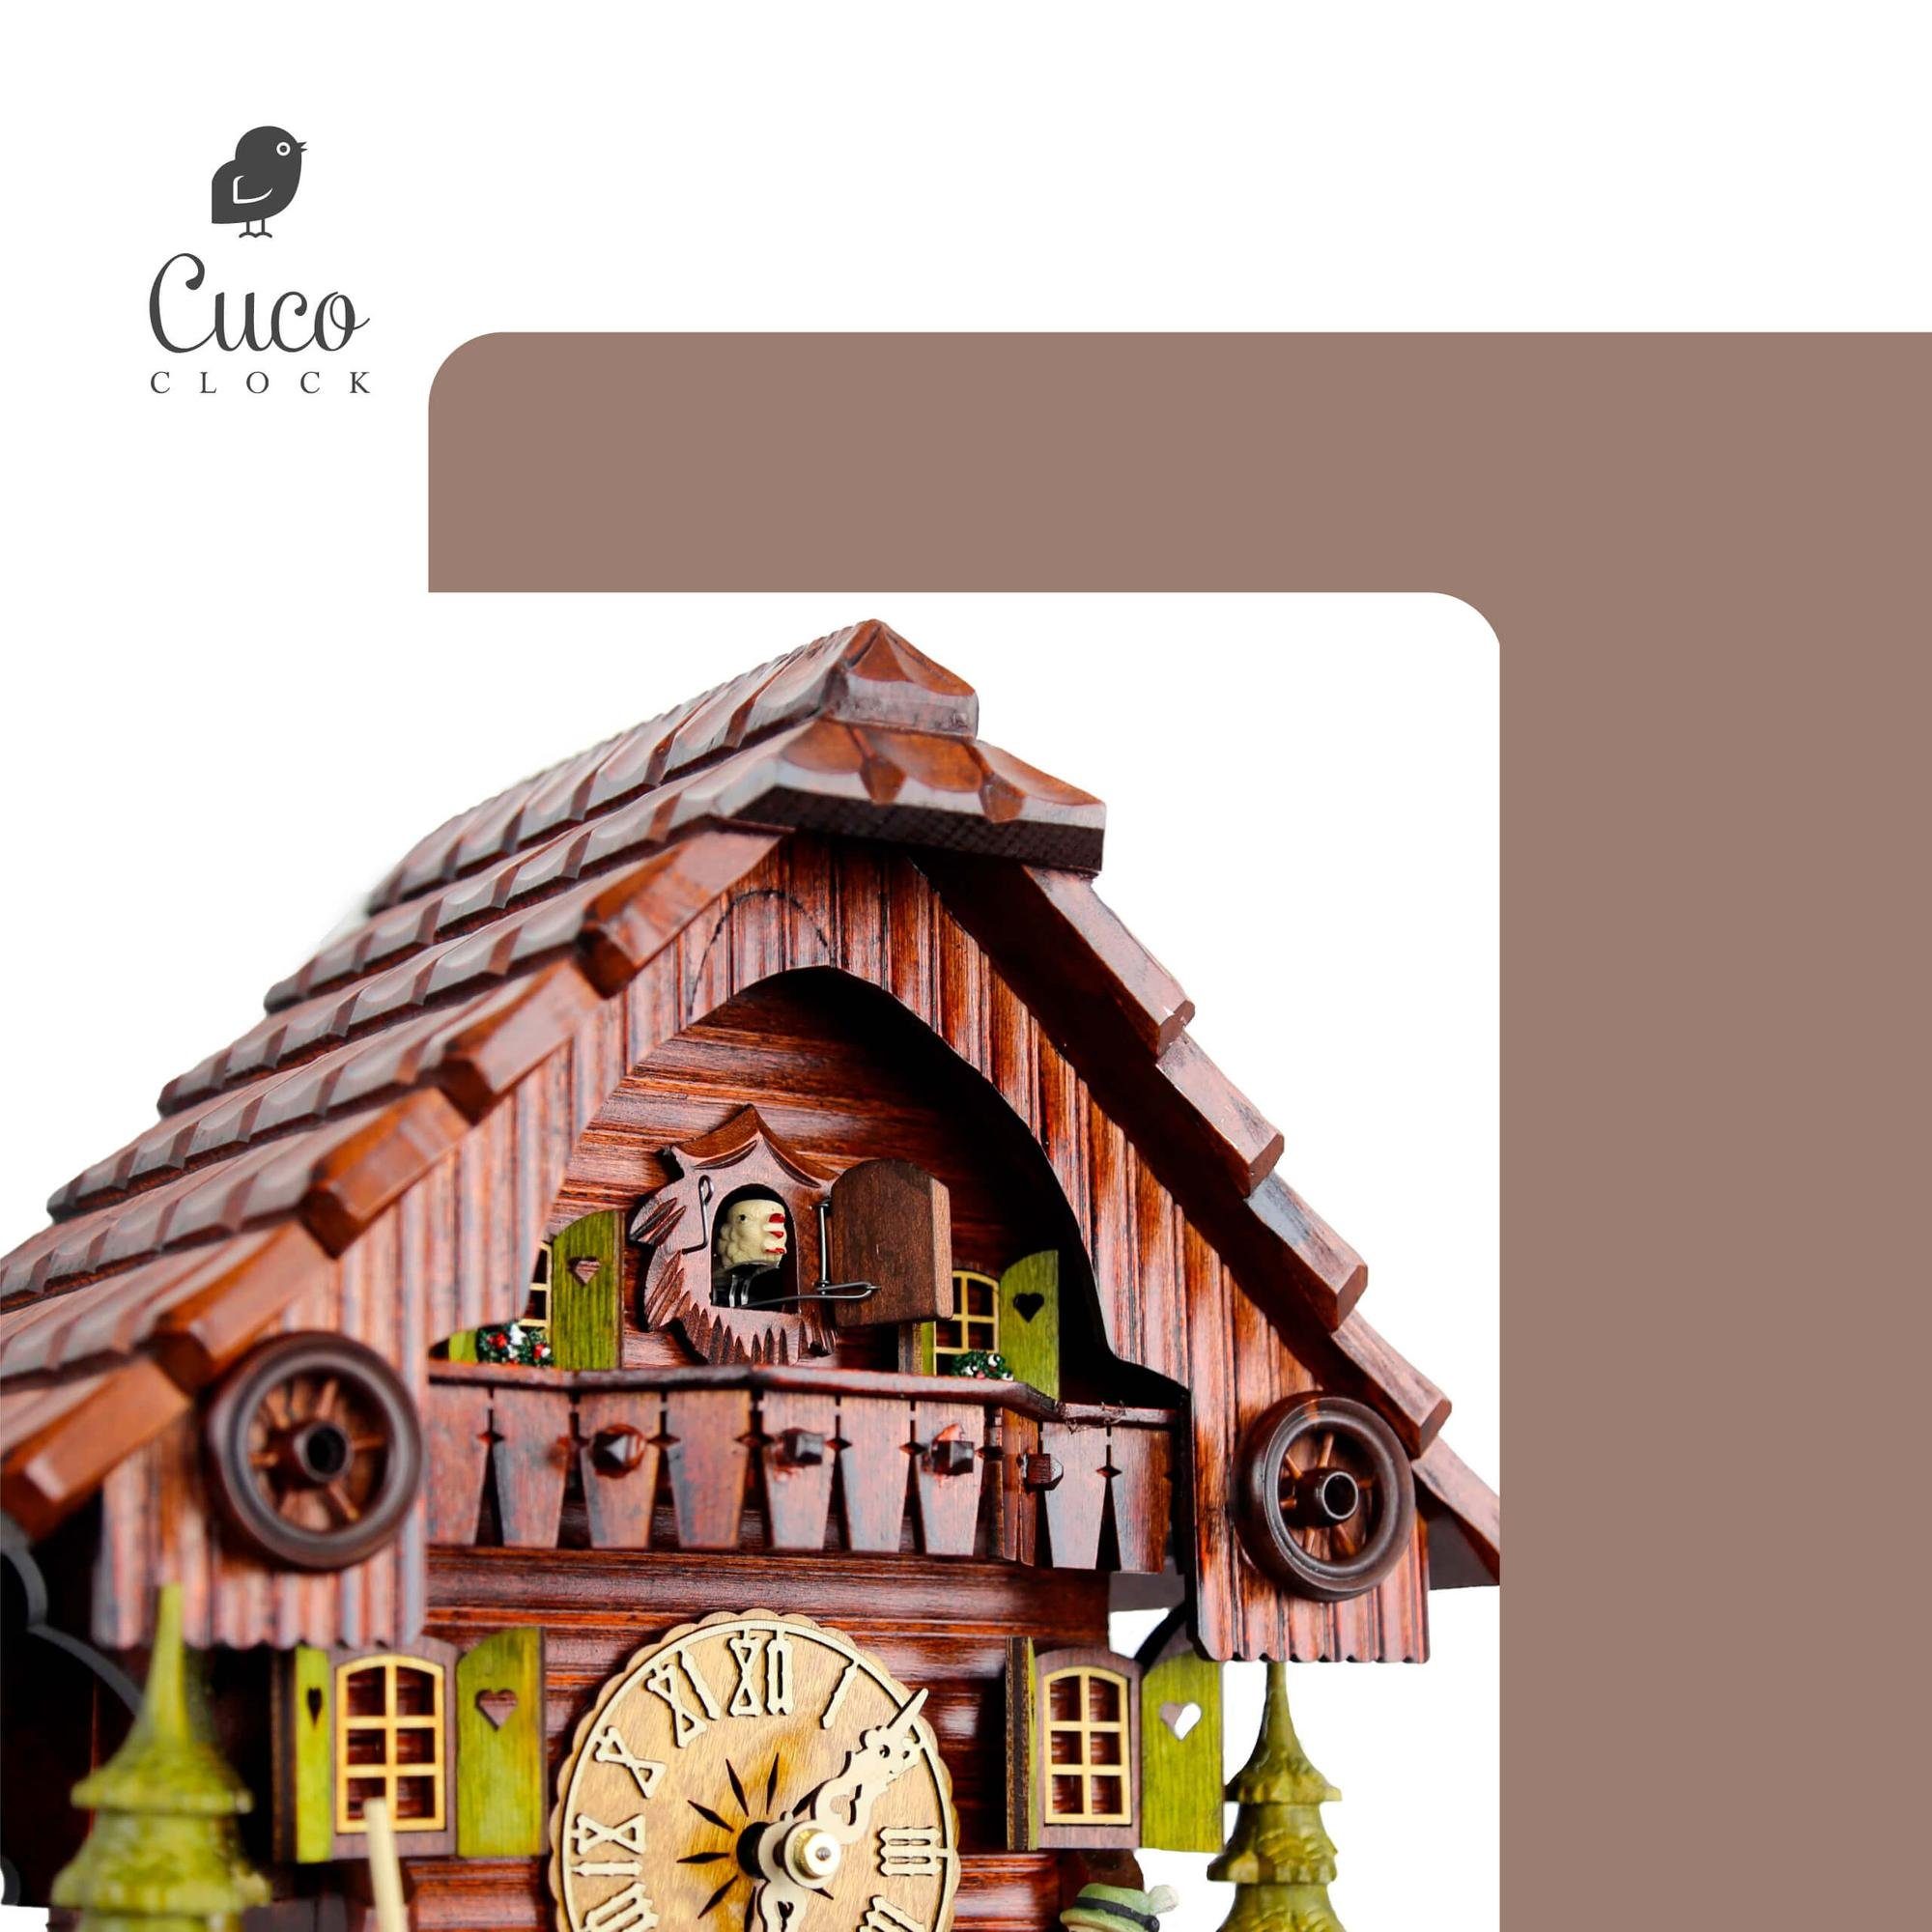 Werk, (19 aus Kuckucksuhr 30cm, 29 "Der Clock Cuco Wanduhr 8 manuelle Holz Pendelwanduhr Biertrinker" Schwarzwalduhr Nachtabschaltung) - x x Tage